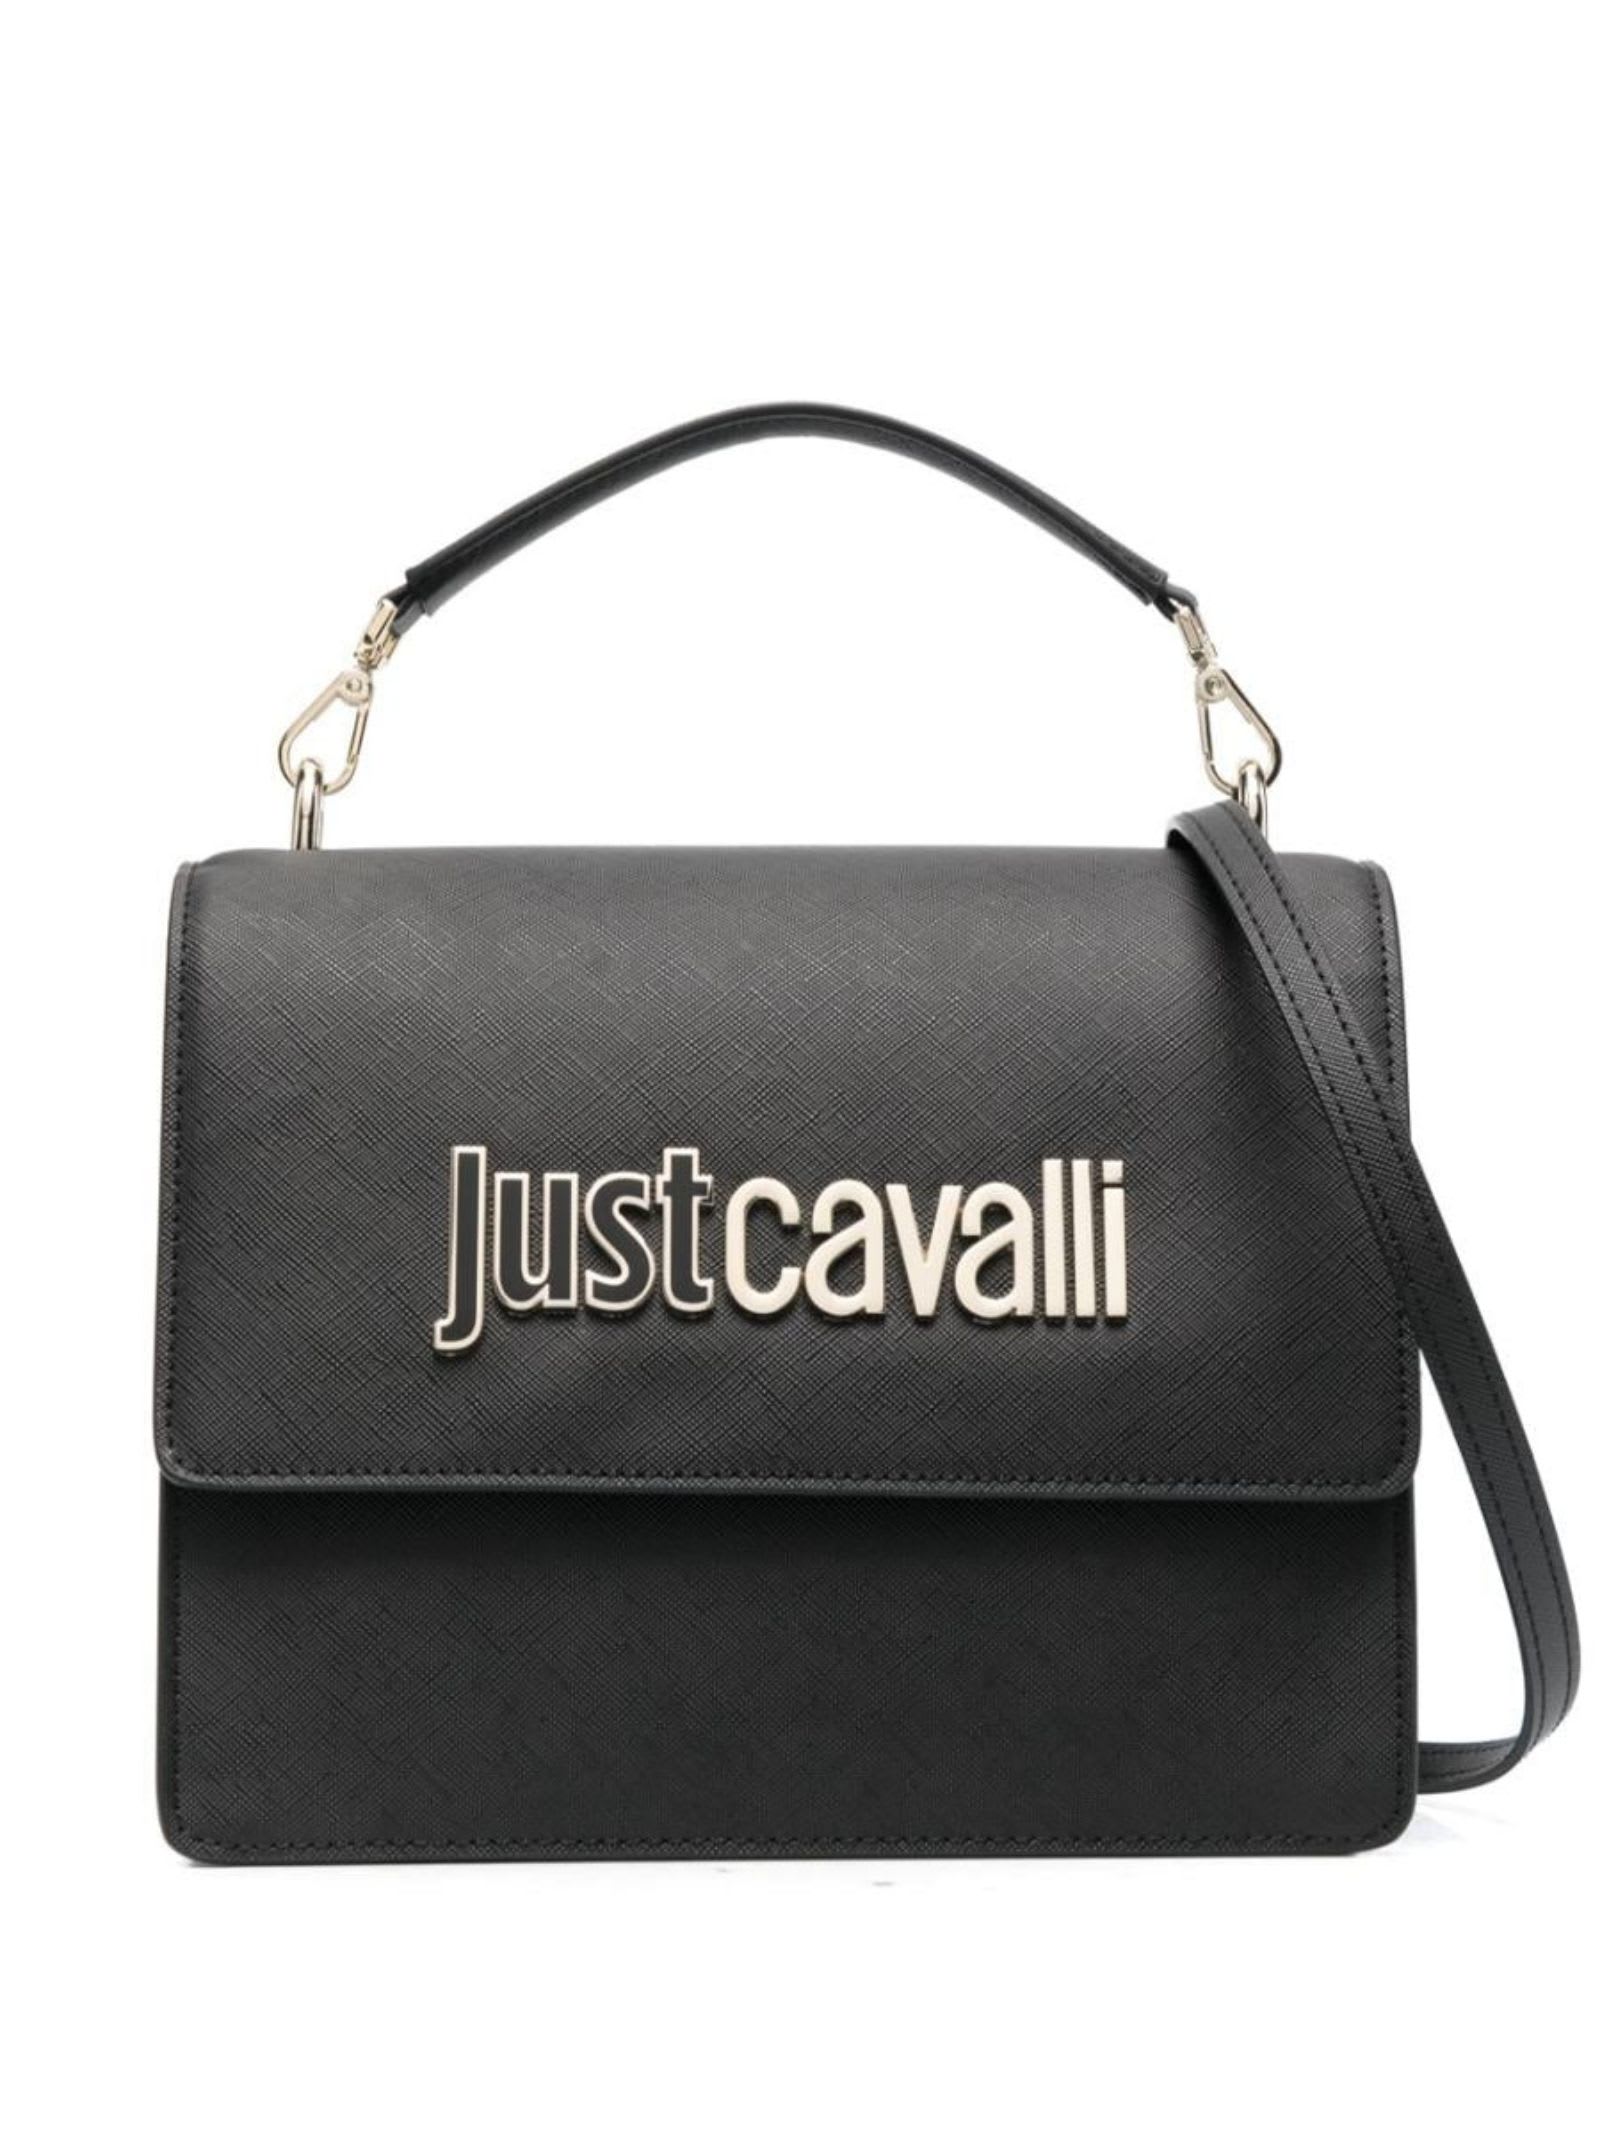 Roberto Cavalli Just Cavalli Bag In Black